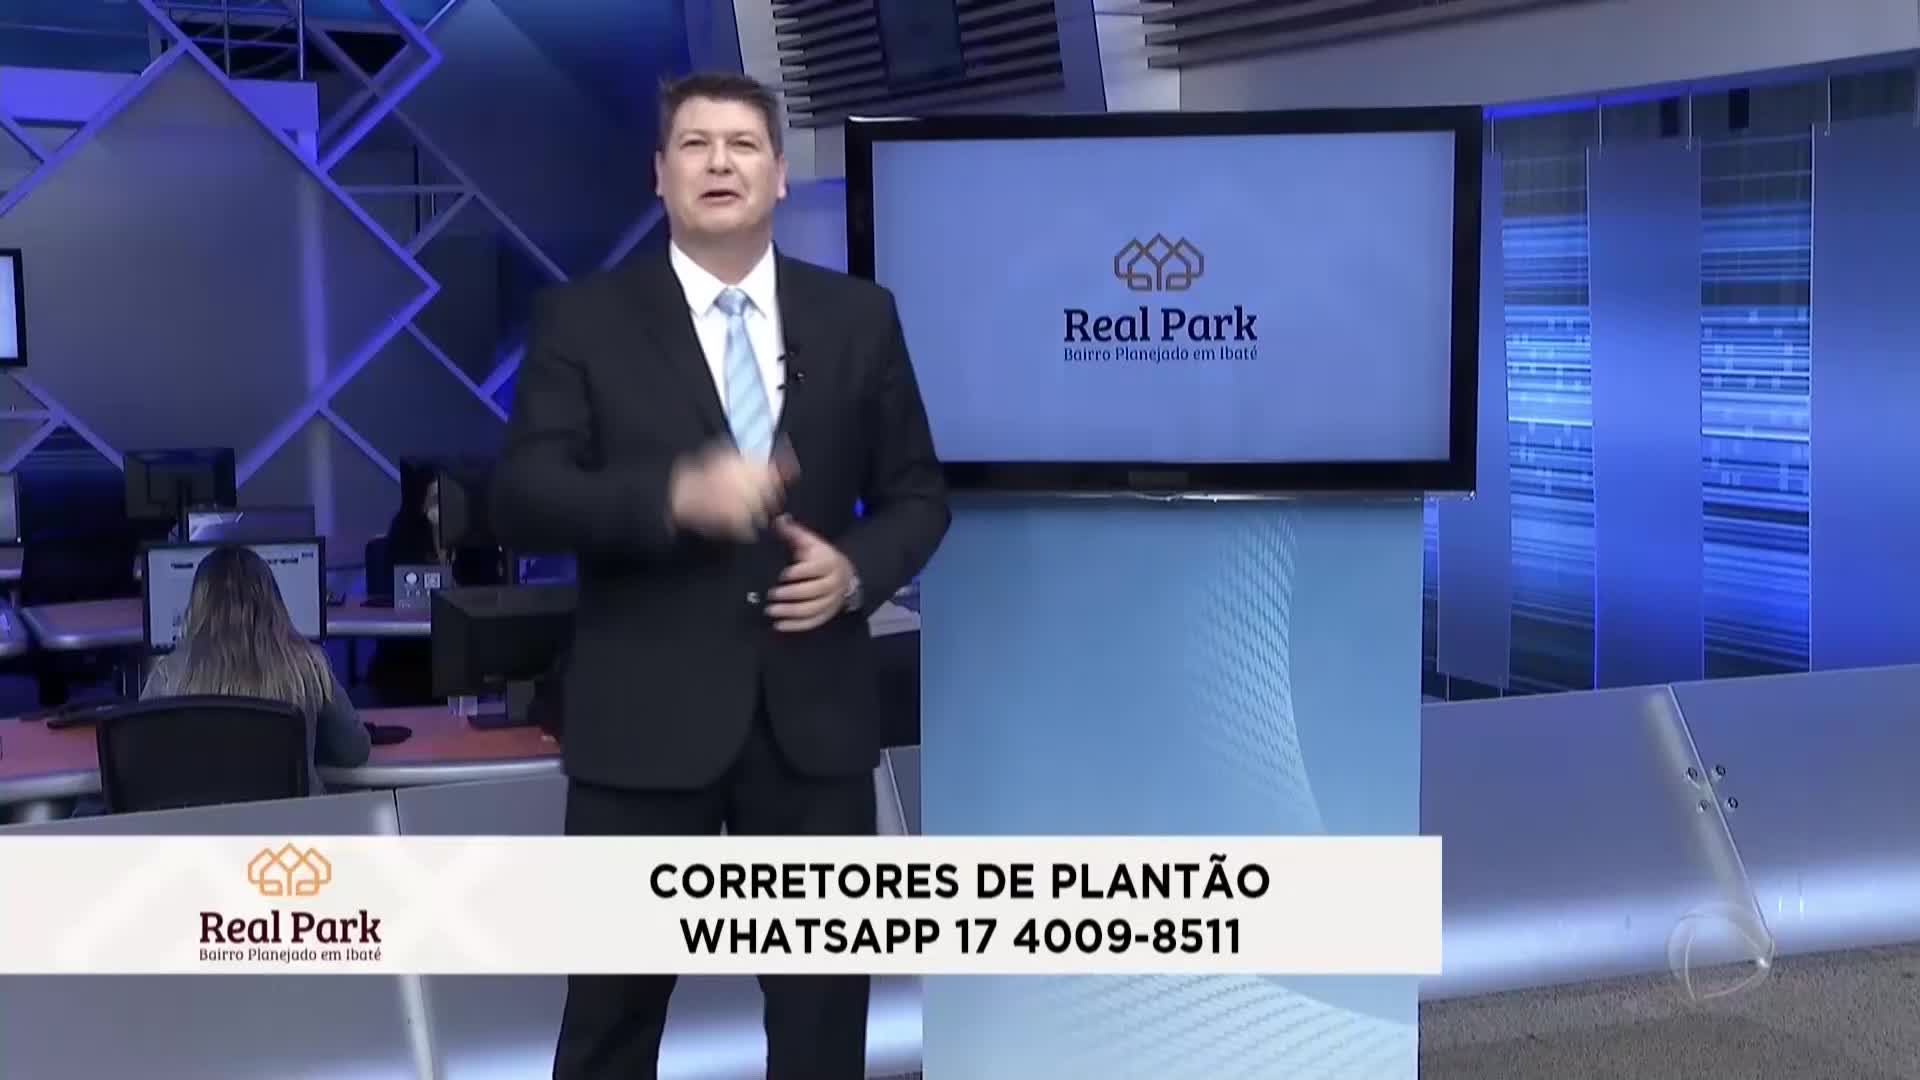 Vídeo: Real Park - Balanço Geral - Exibido em 10/06/2022